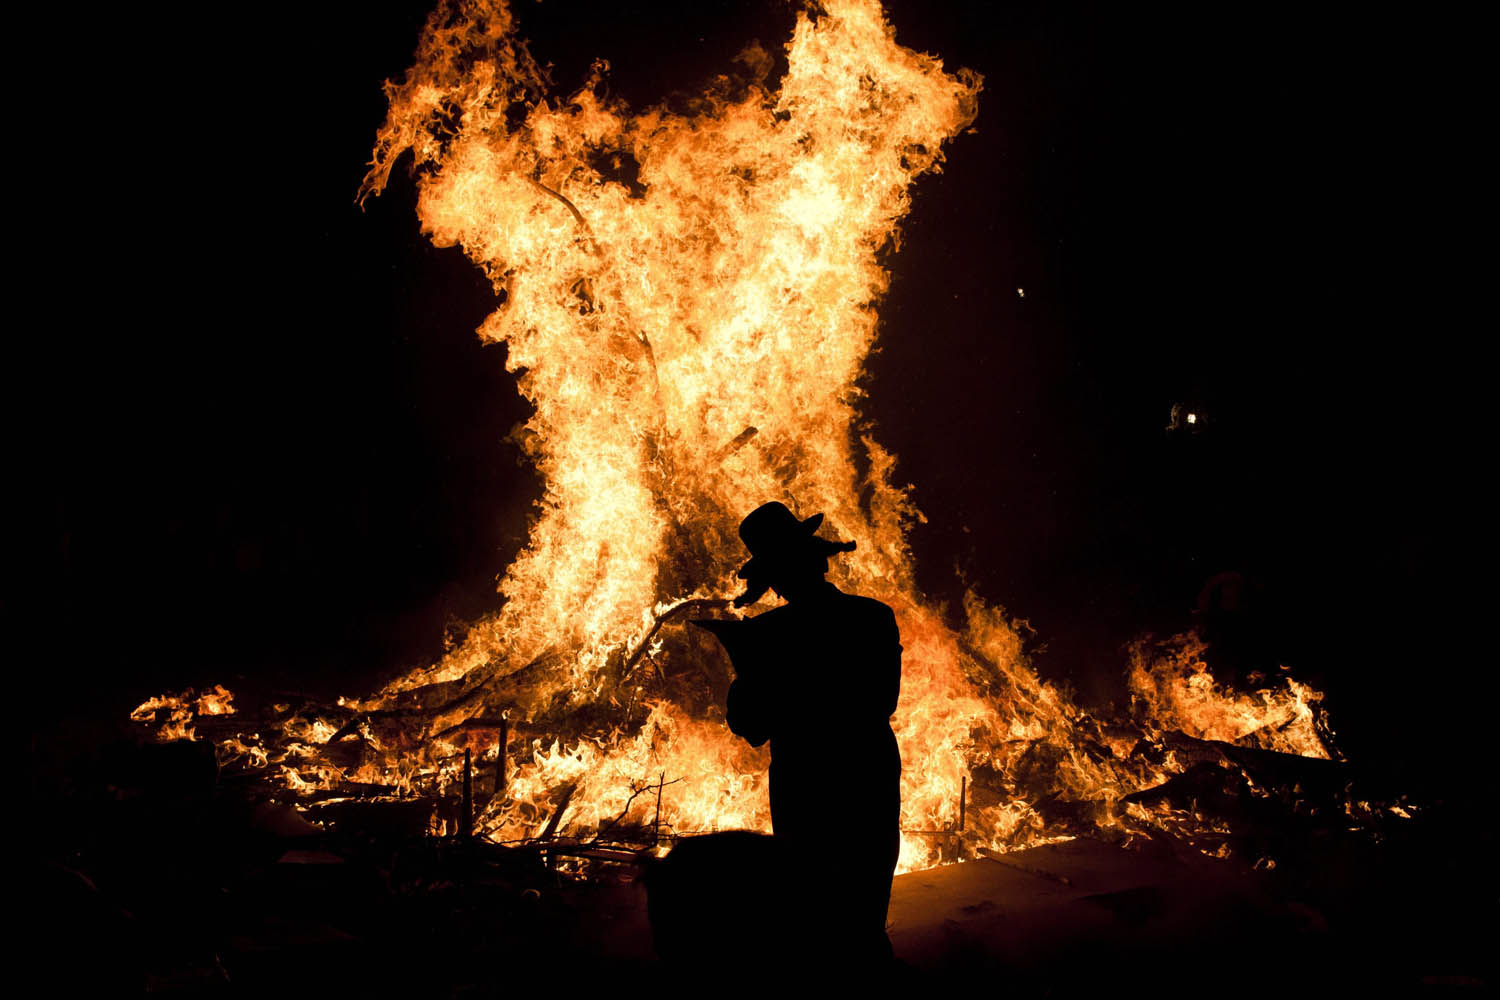 Bonfires in Mea Shearim on Lag Ba'Omer